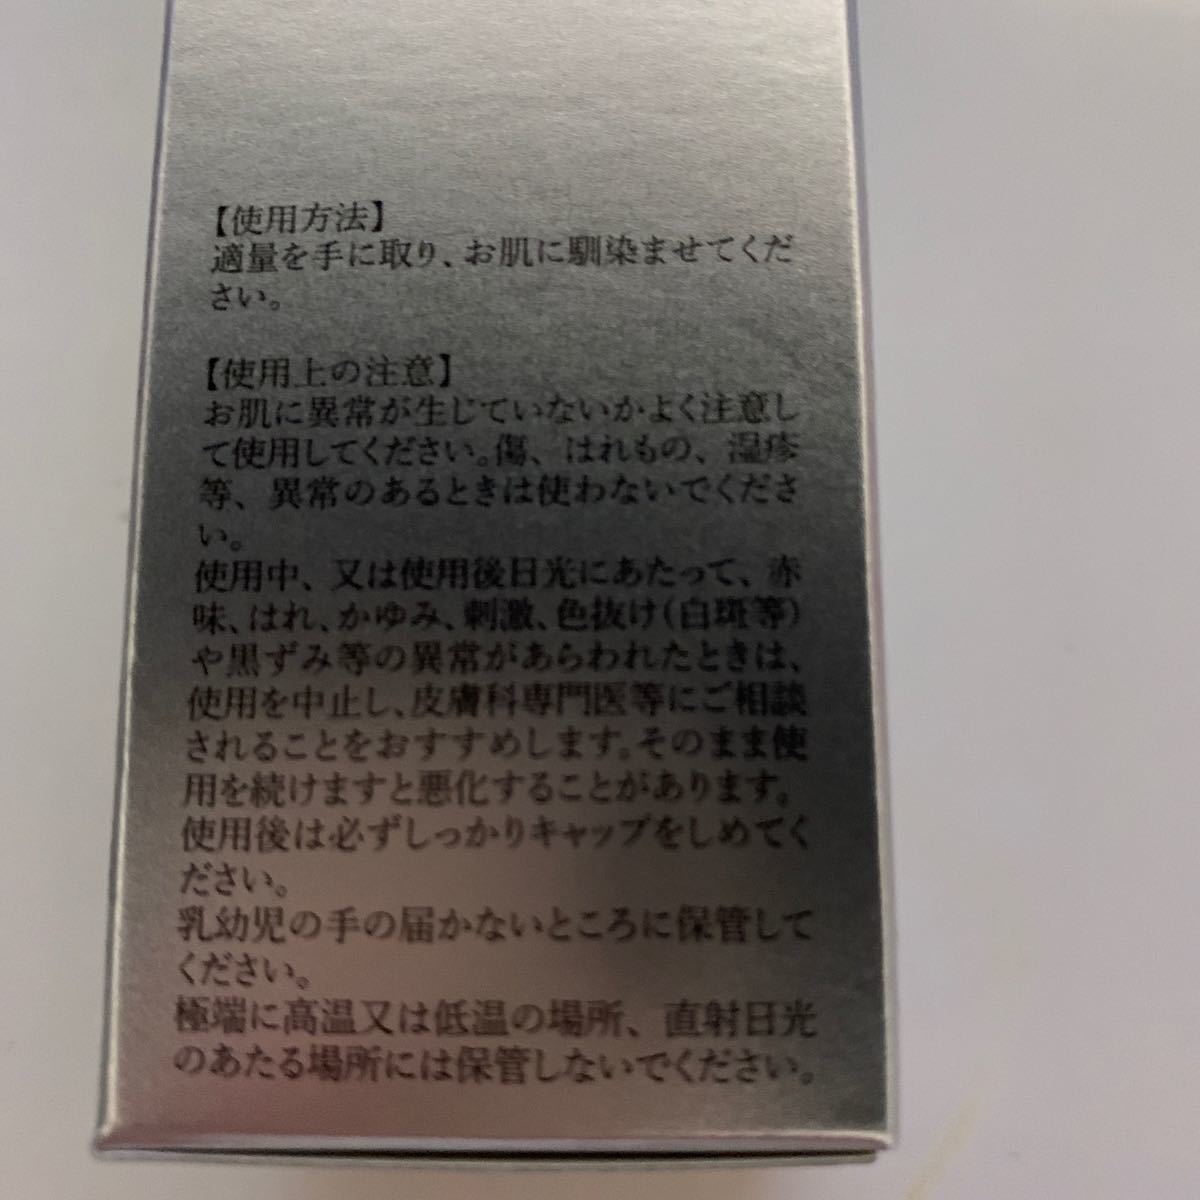  новый товар не использовался товар LUANGE PDRFECT Sru Anne ju Perfect S лосьон увлажняющий лосьон 120ml обычная цена 16500 иен прекрасный белый потускнение. . блеск 